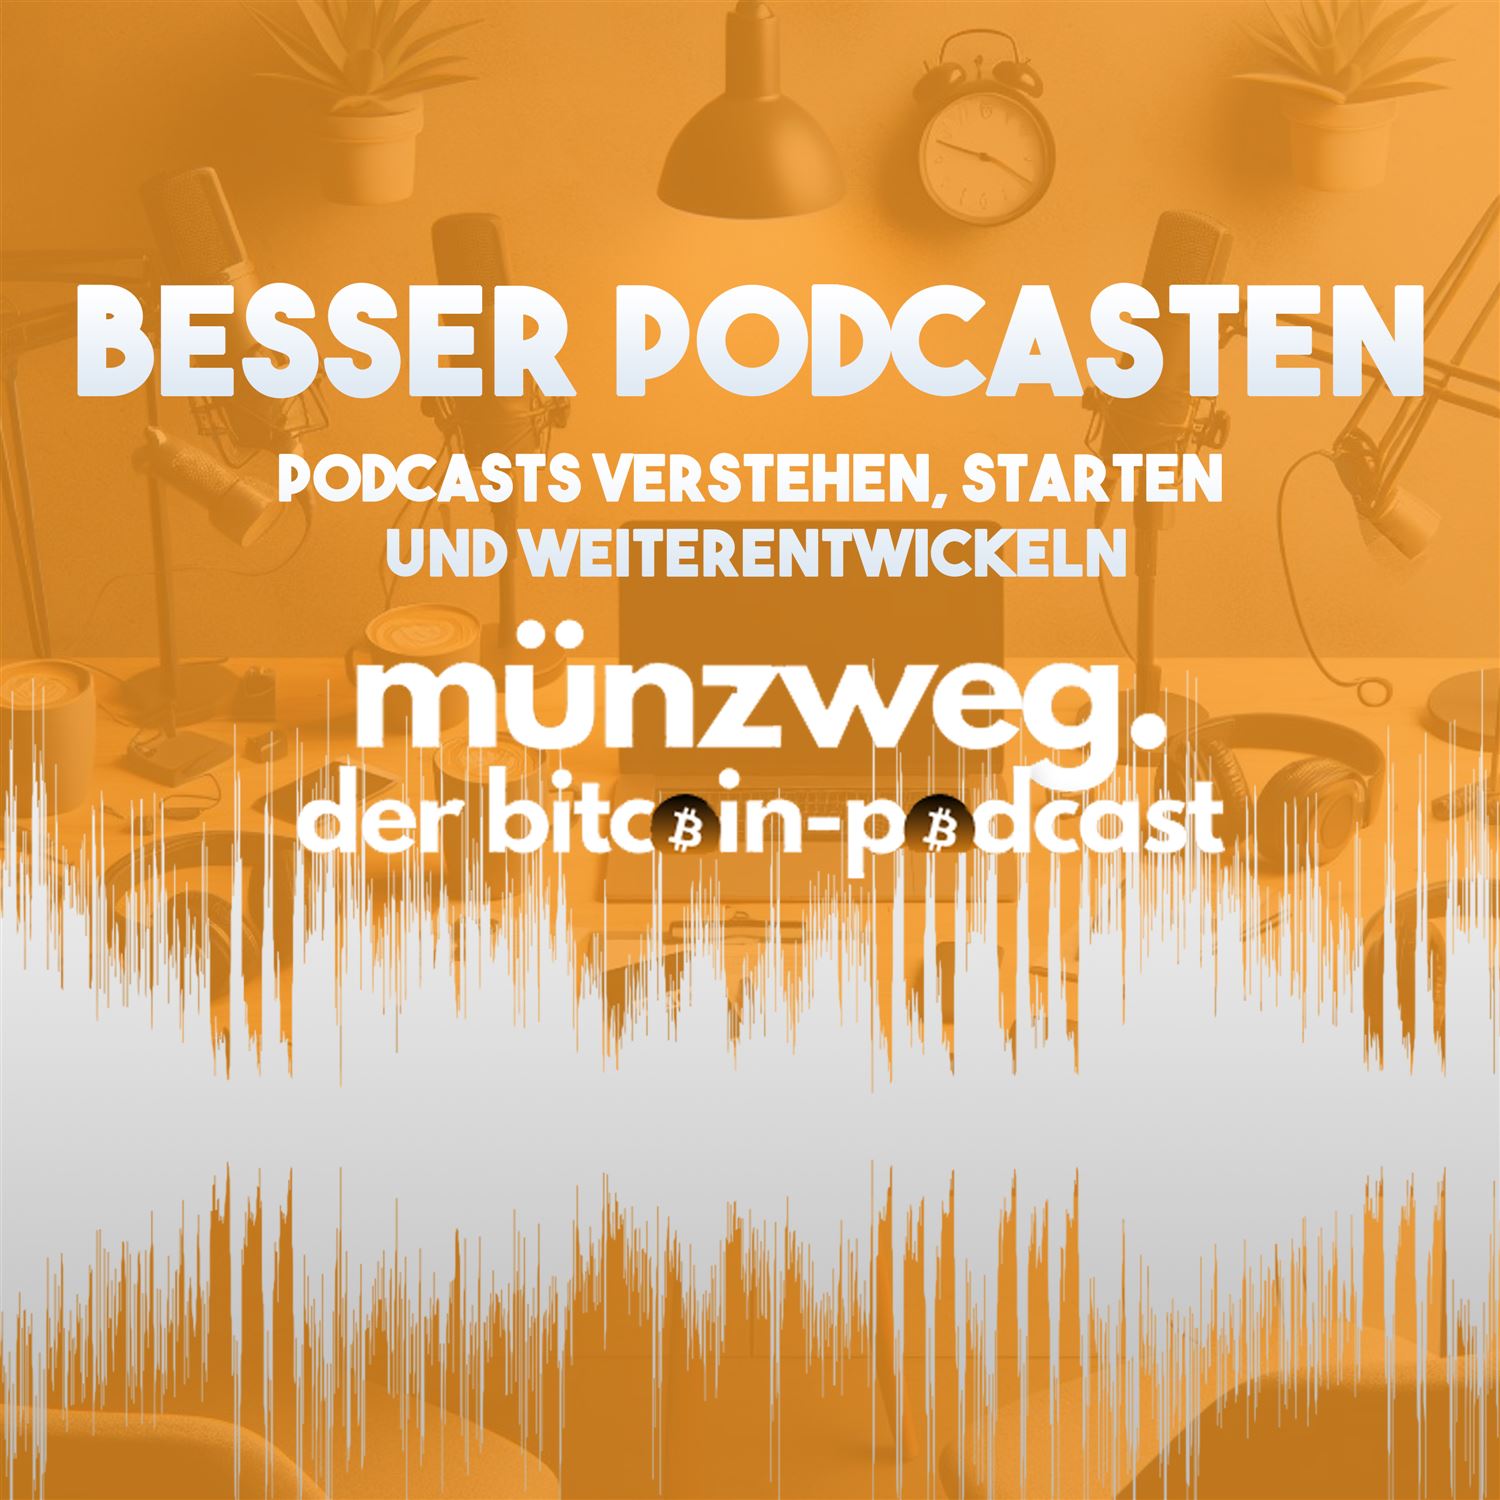 Besser Podcasten - E05 - Monetarisierung von Podcasts